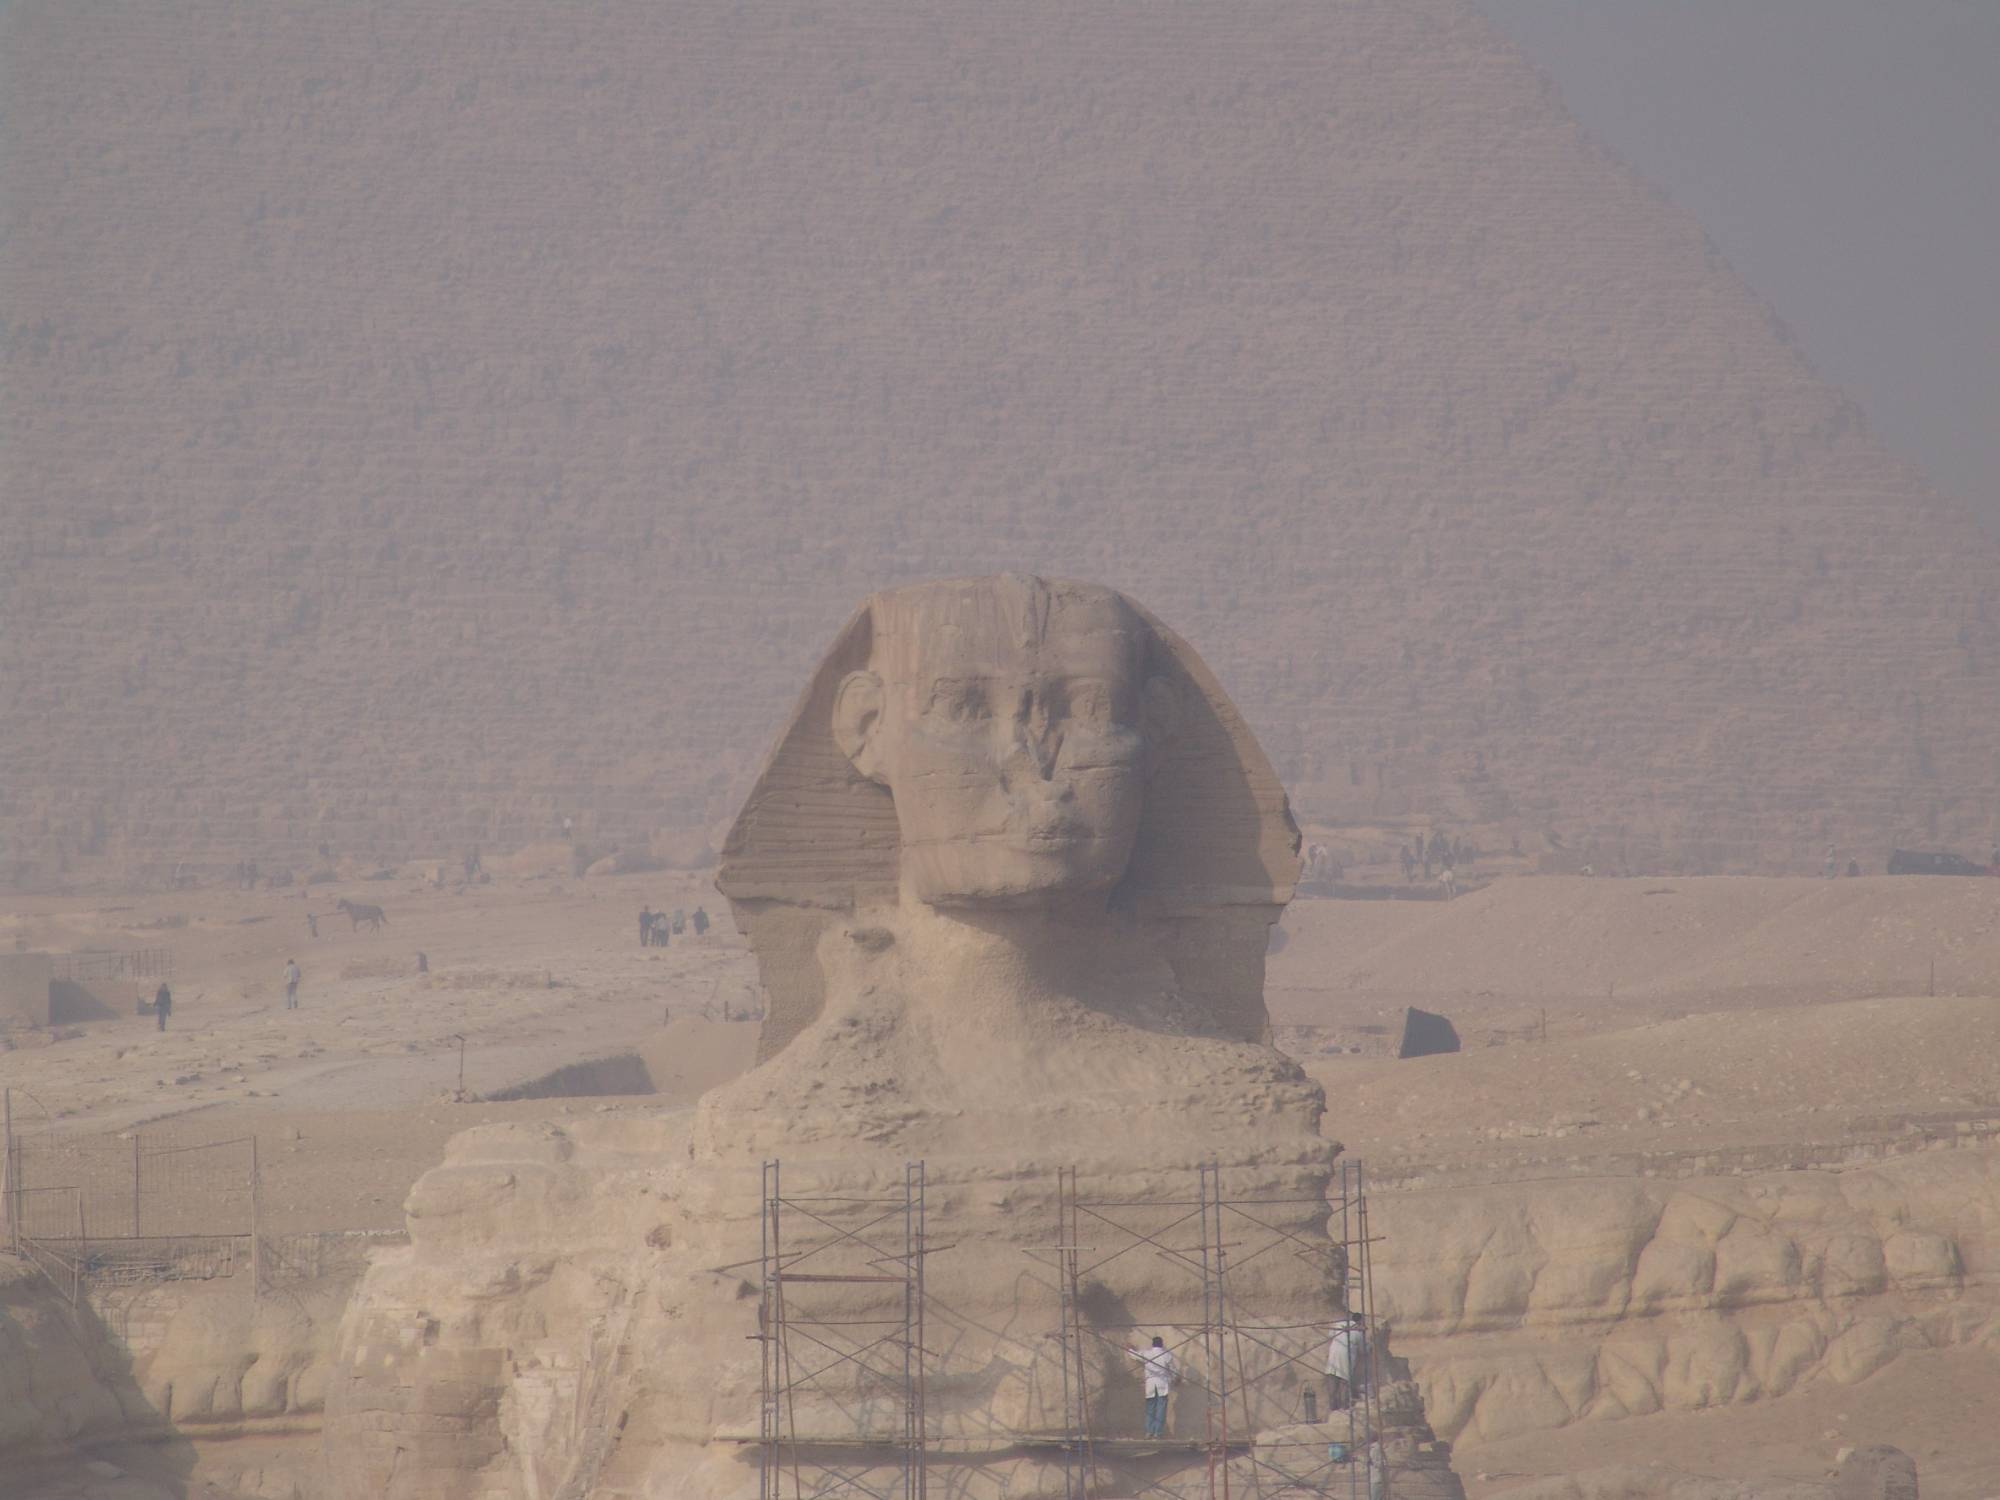 Egypt - Sphinx, Giza pyramids, Cairo